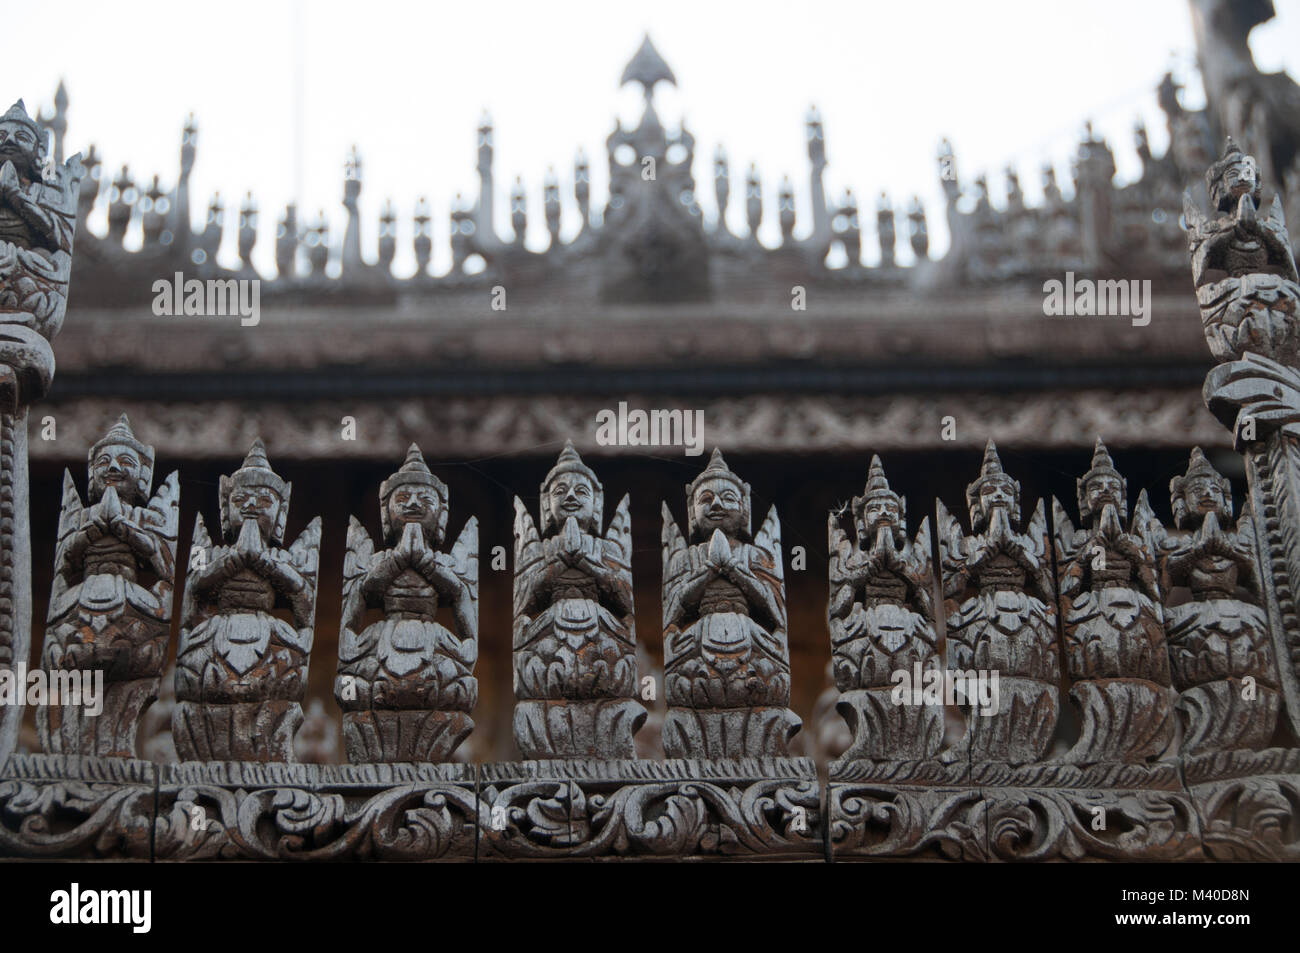 Teakwood carvings on Shwenandaw Monastery, Mandalay, Myanmar Stock Photo